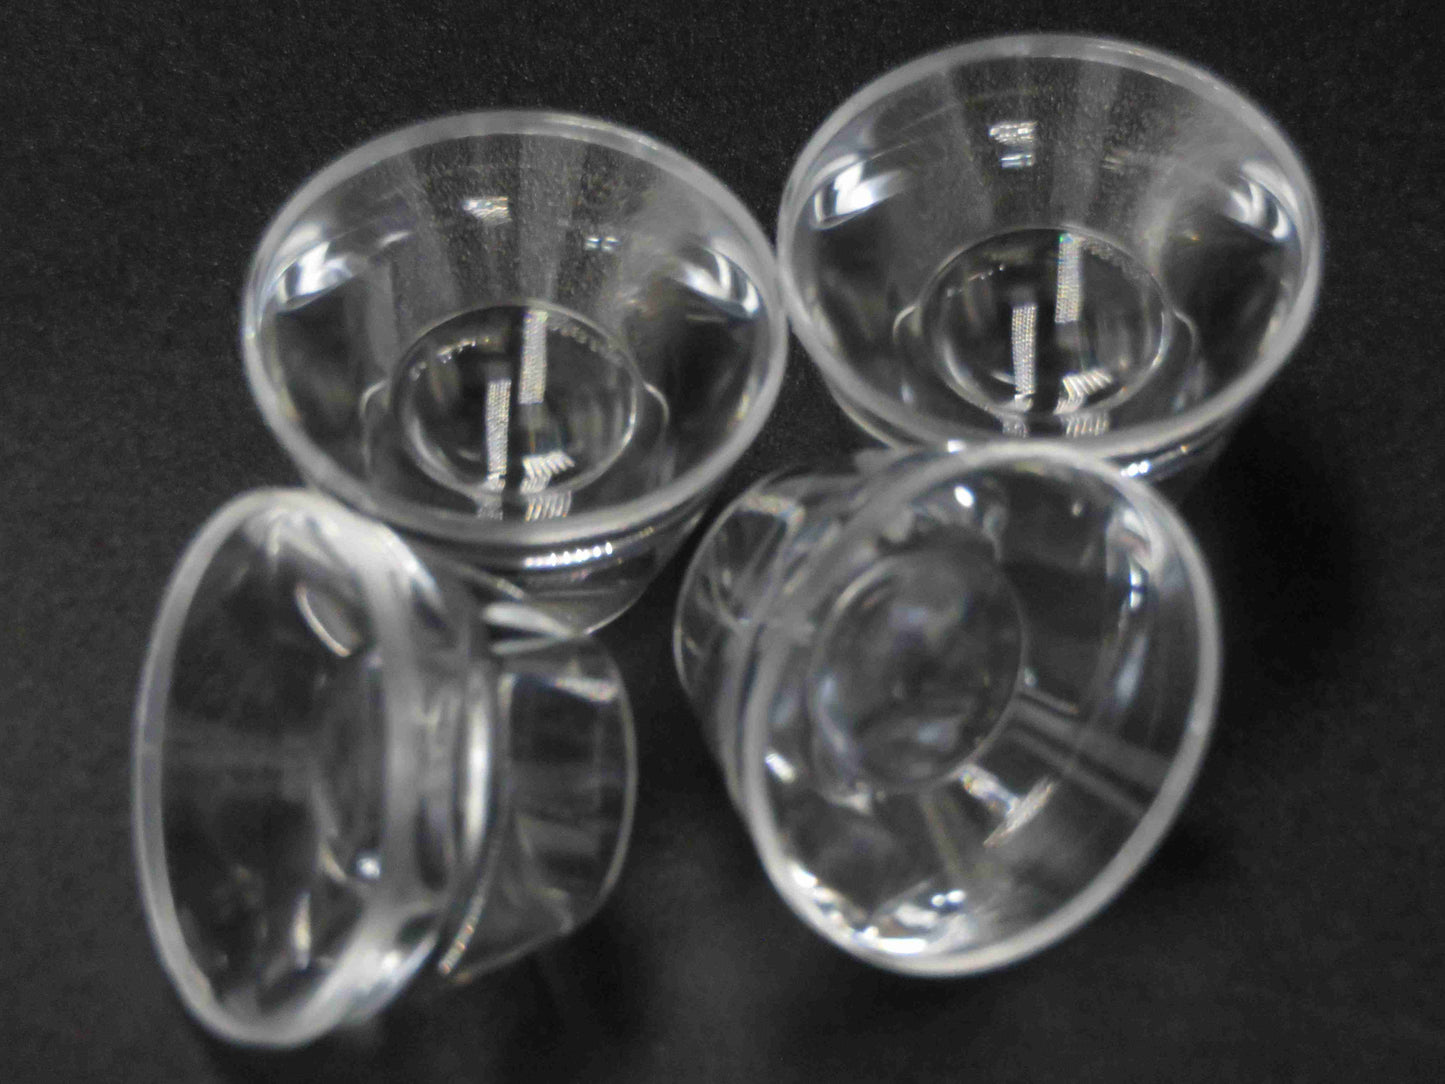 TIR Lens Reflector Collimator 6-60 درجة عدسة بصريات مصباح يدوي لمصباح LED